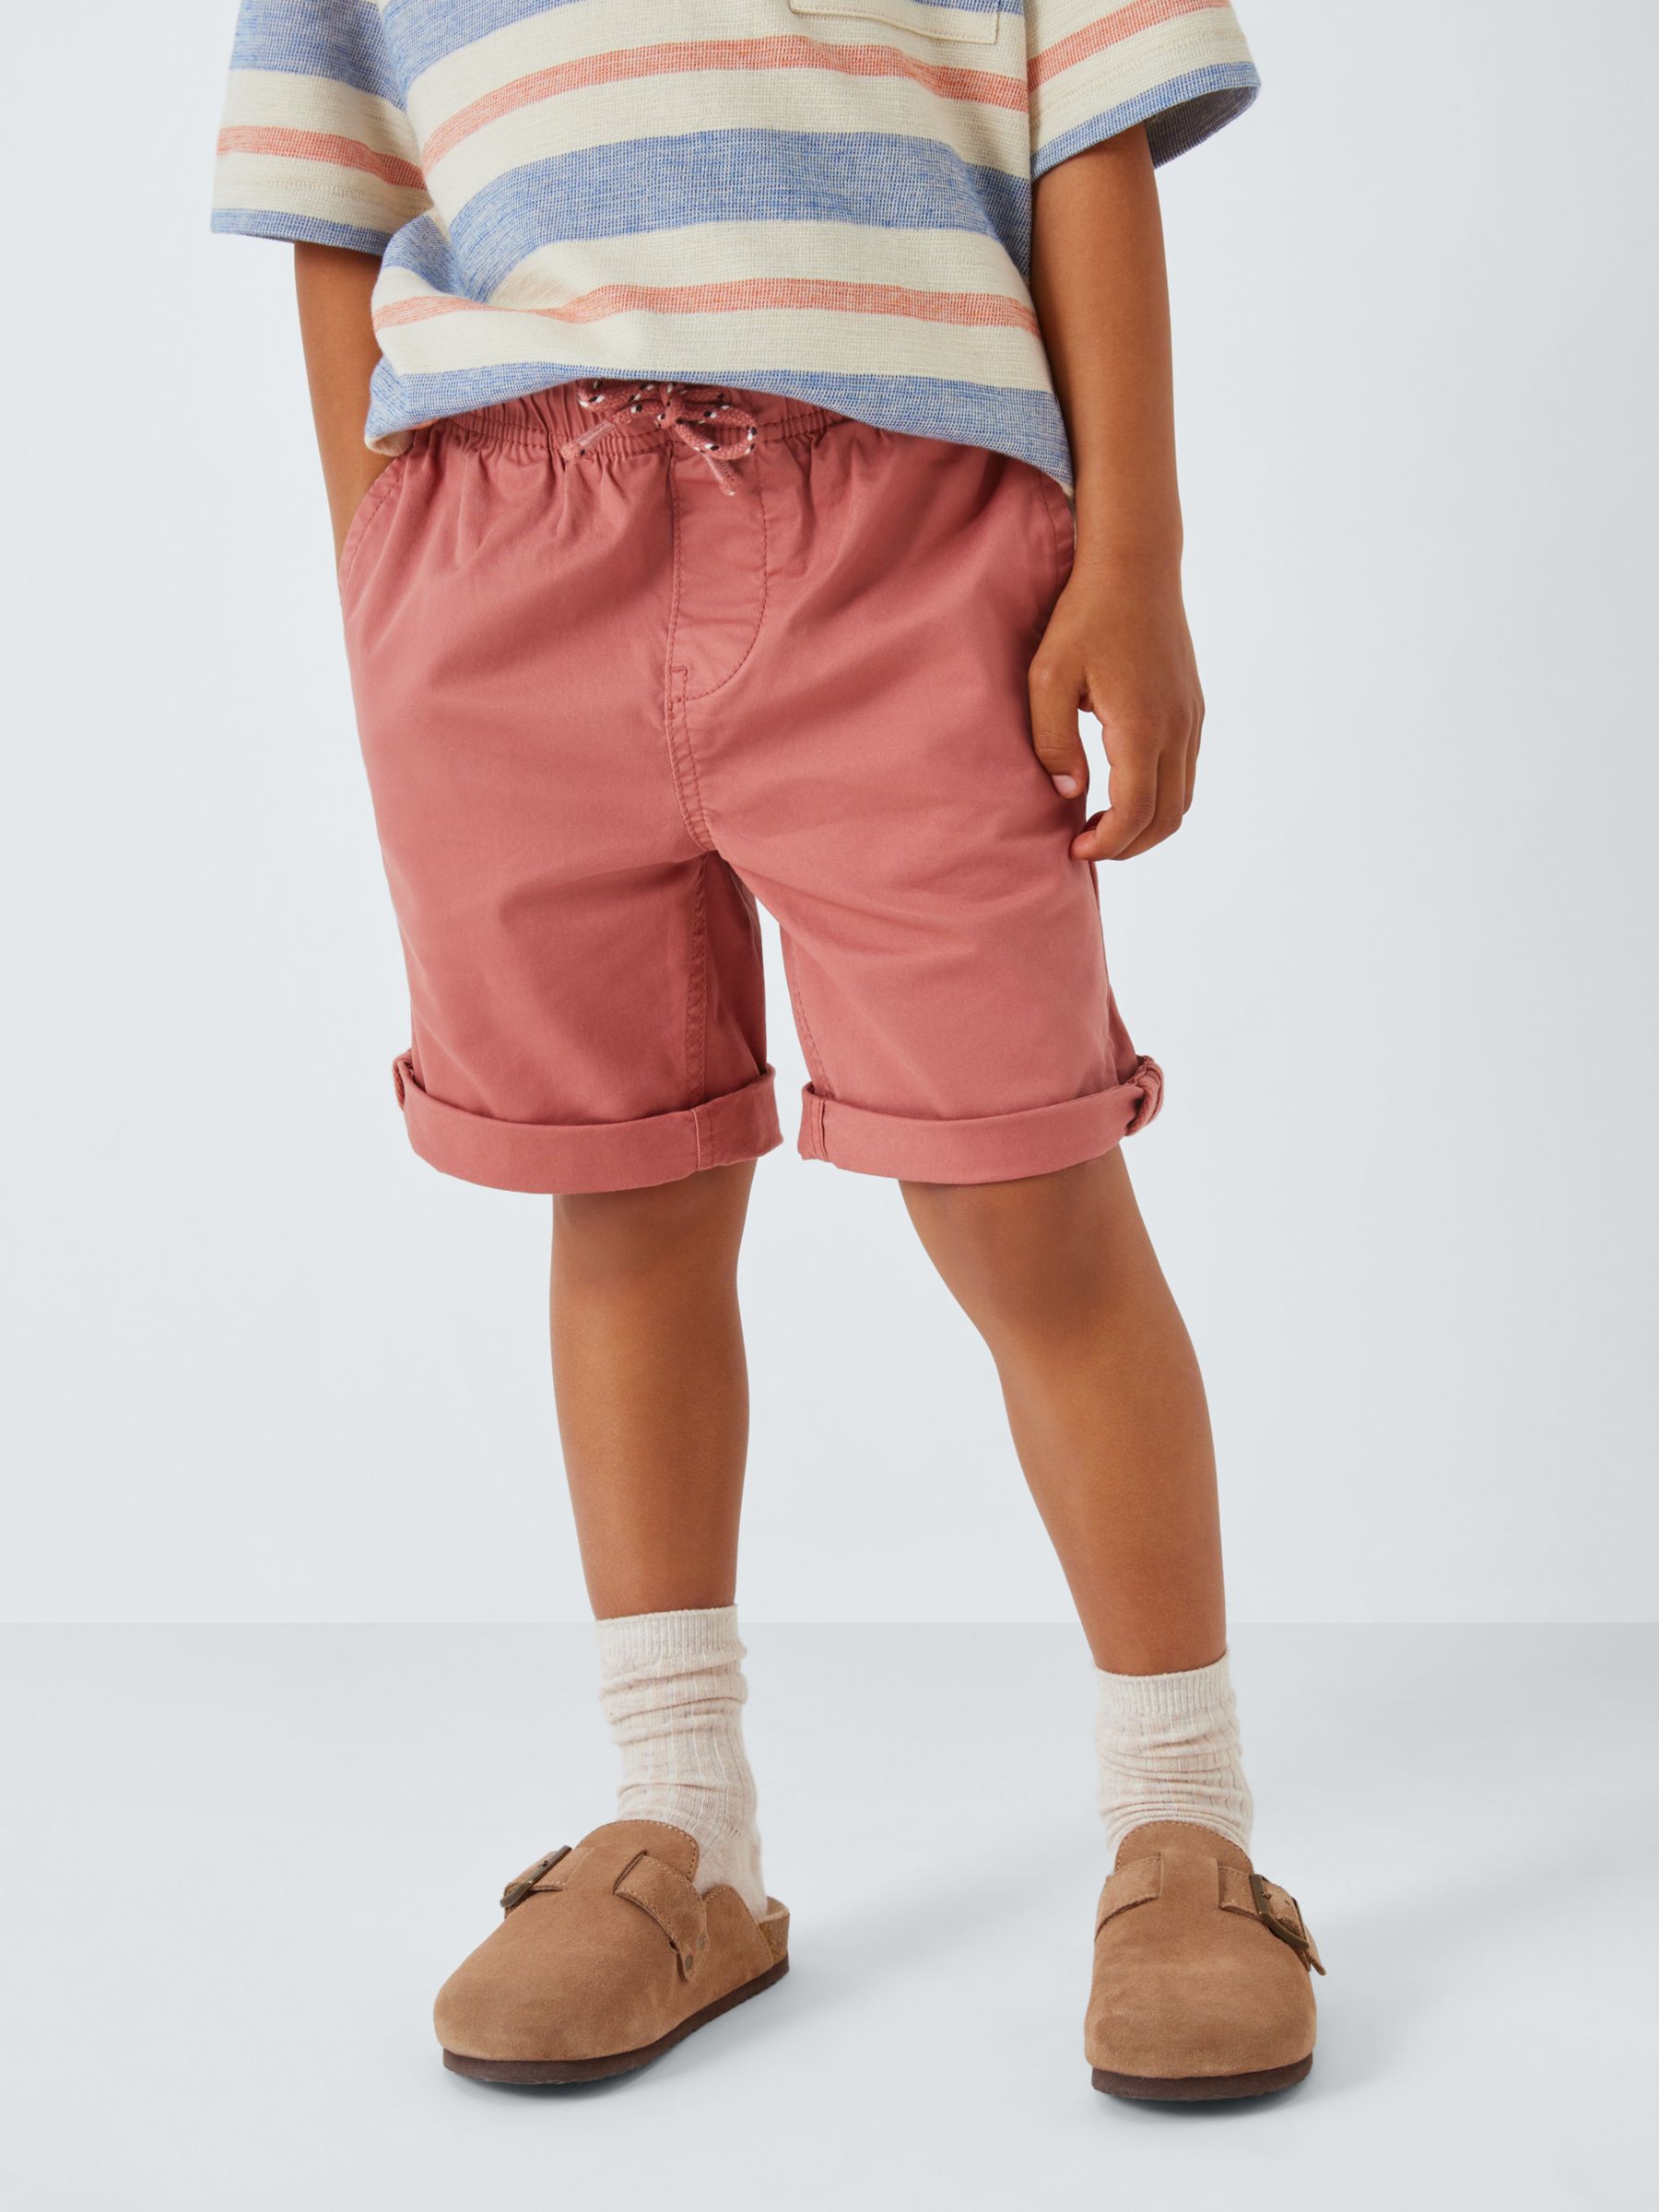 Buy John Lewis Kids' Chino Shorts, Pack of 2, Multi Online at johnlewis.com